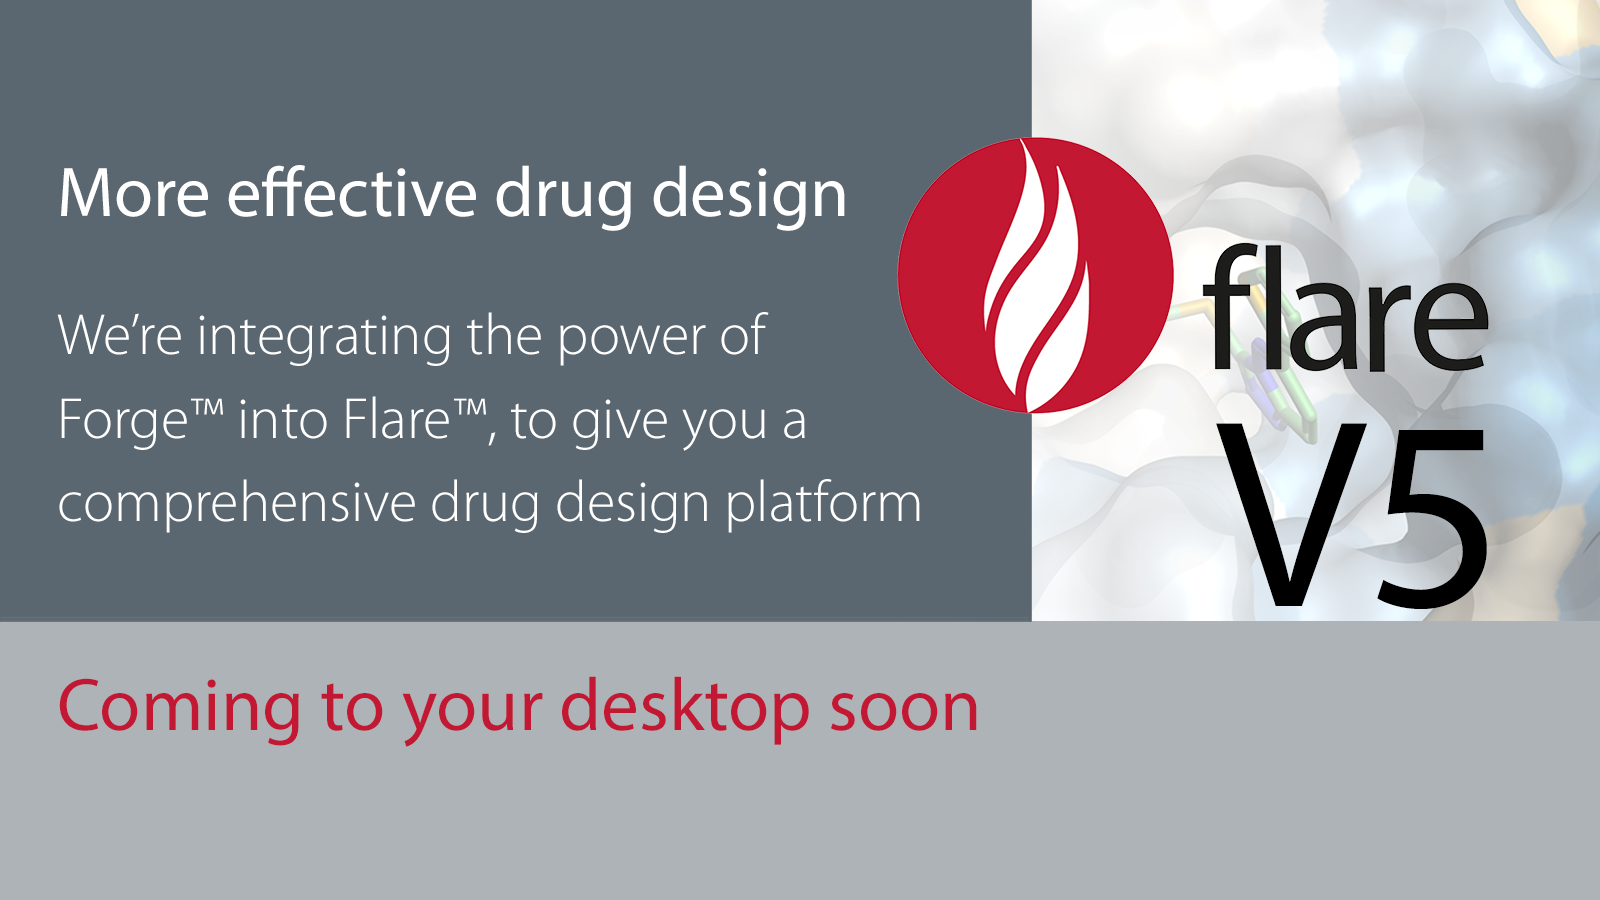 1600x900_1_Flare V5 more effective drug design_cropped for web footer